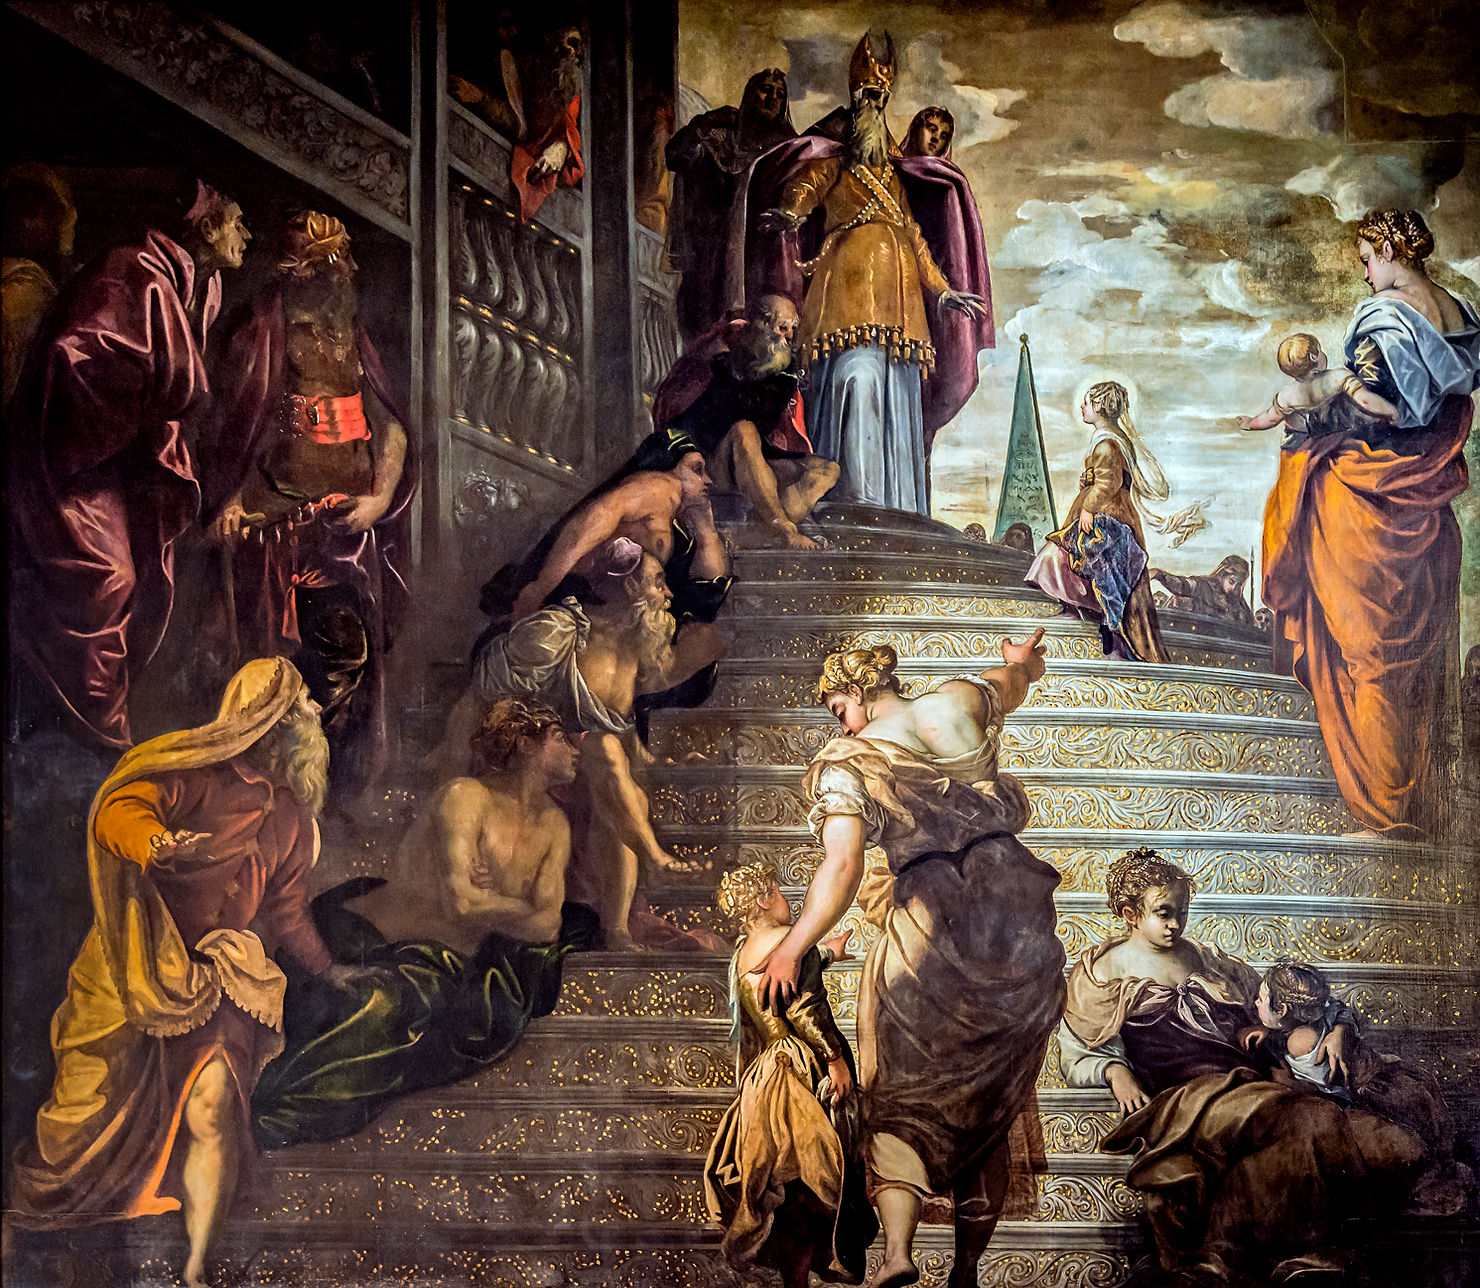 Jacopo Tintoretto "Presentazione di Maria al Tempio" 1551-56, olio su tela, cm 429x480, Chiesa della Madonna dell'Orto, Venezia.